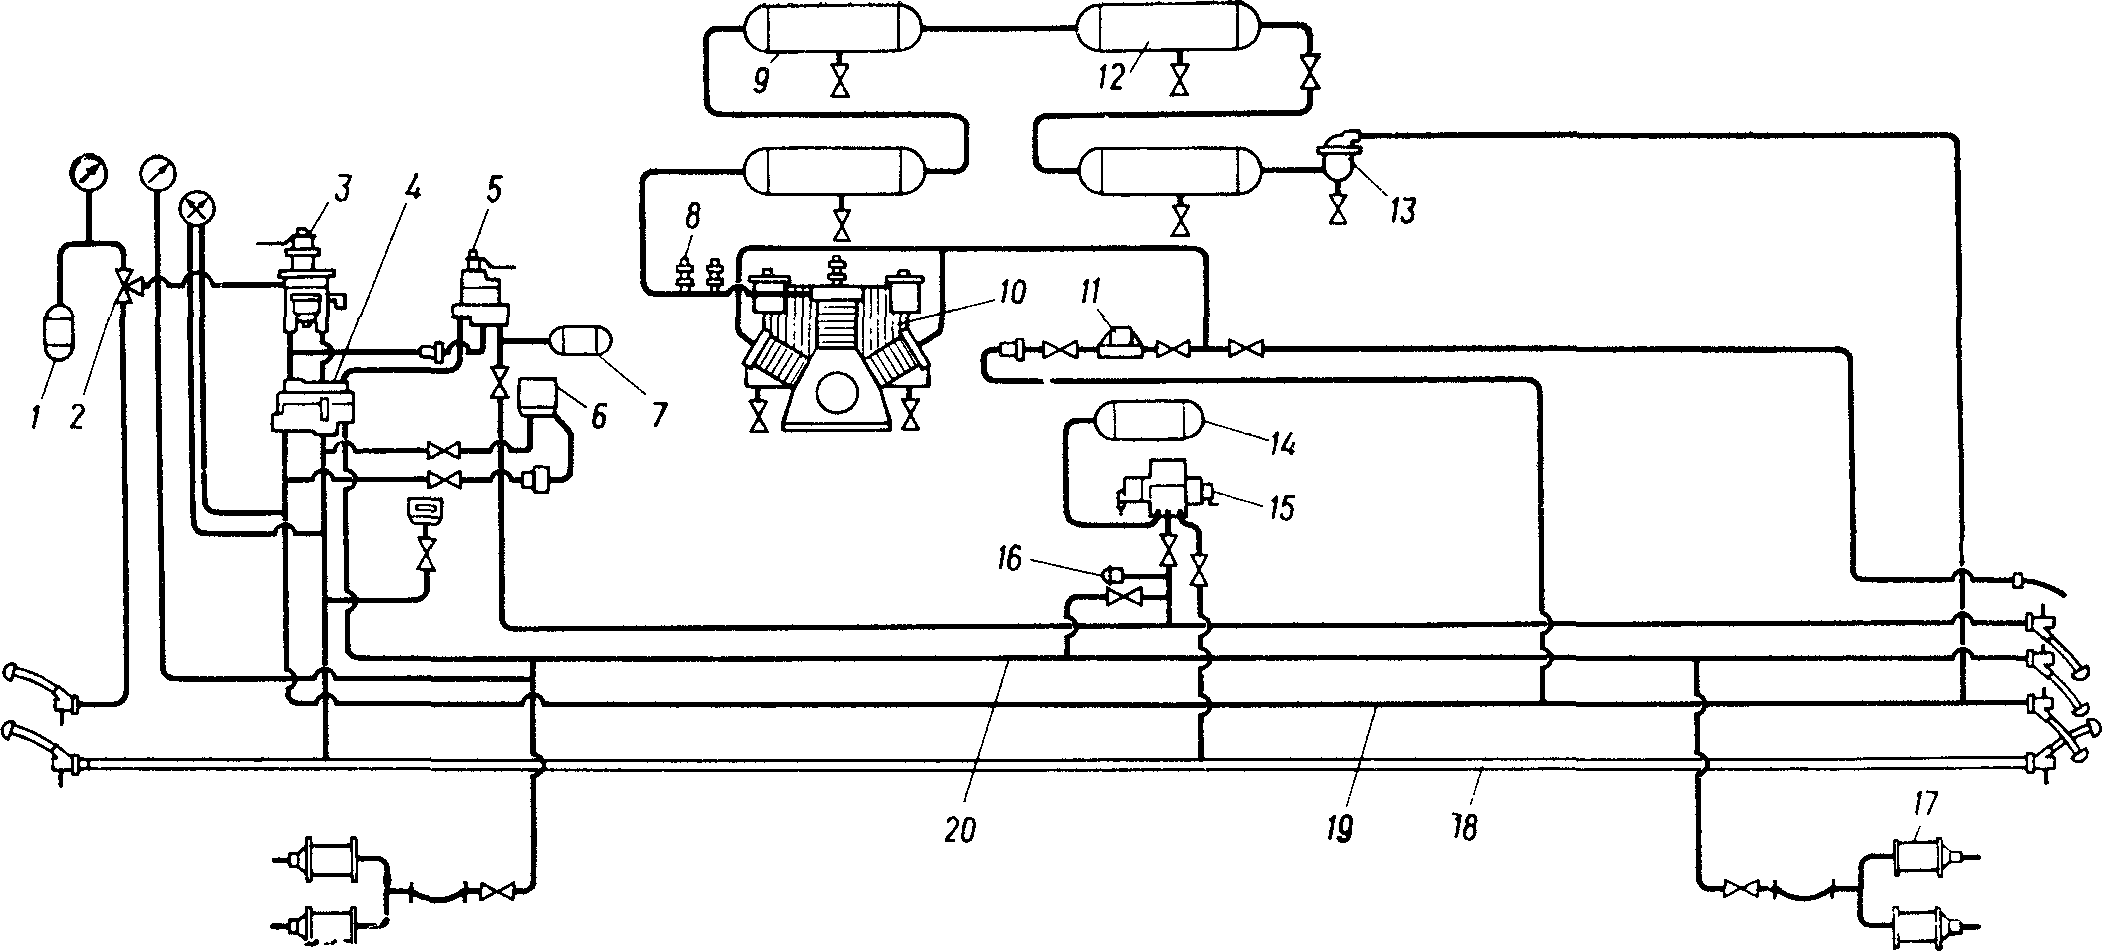 Схема тормозного оборудования тепловоза ТЭ3